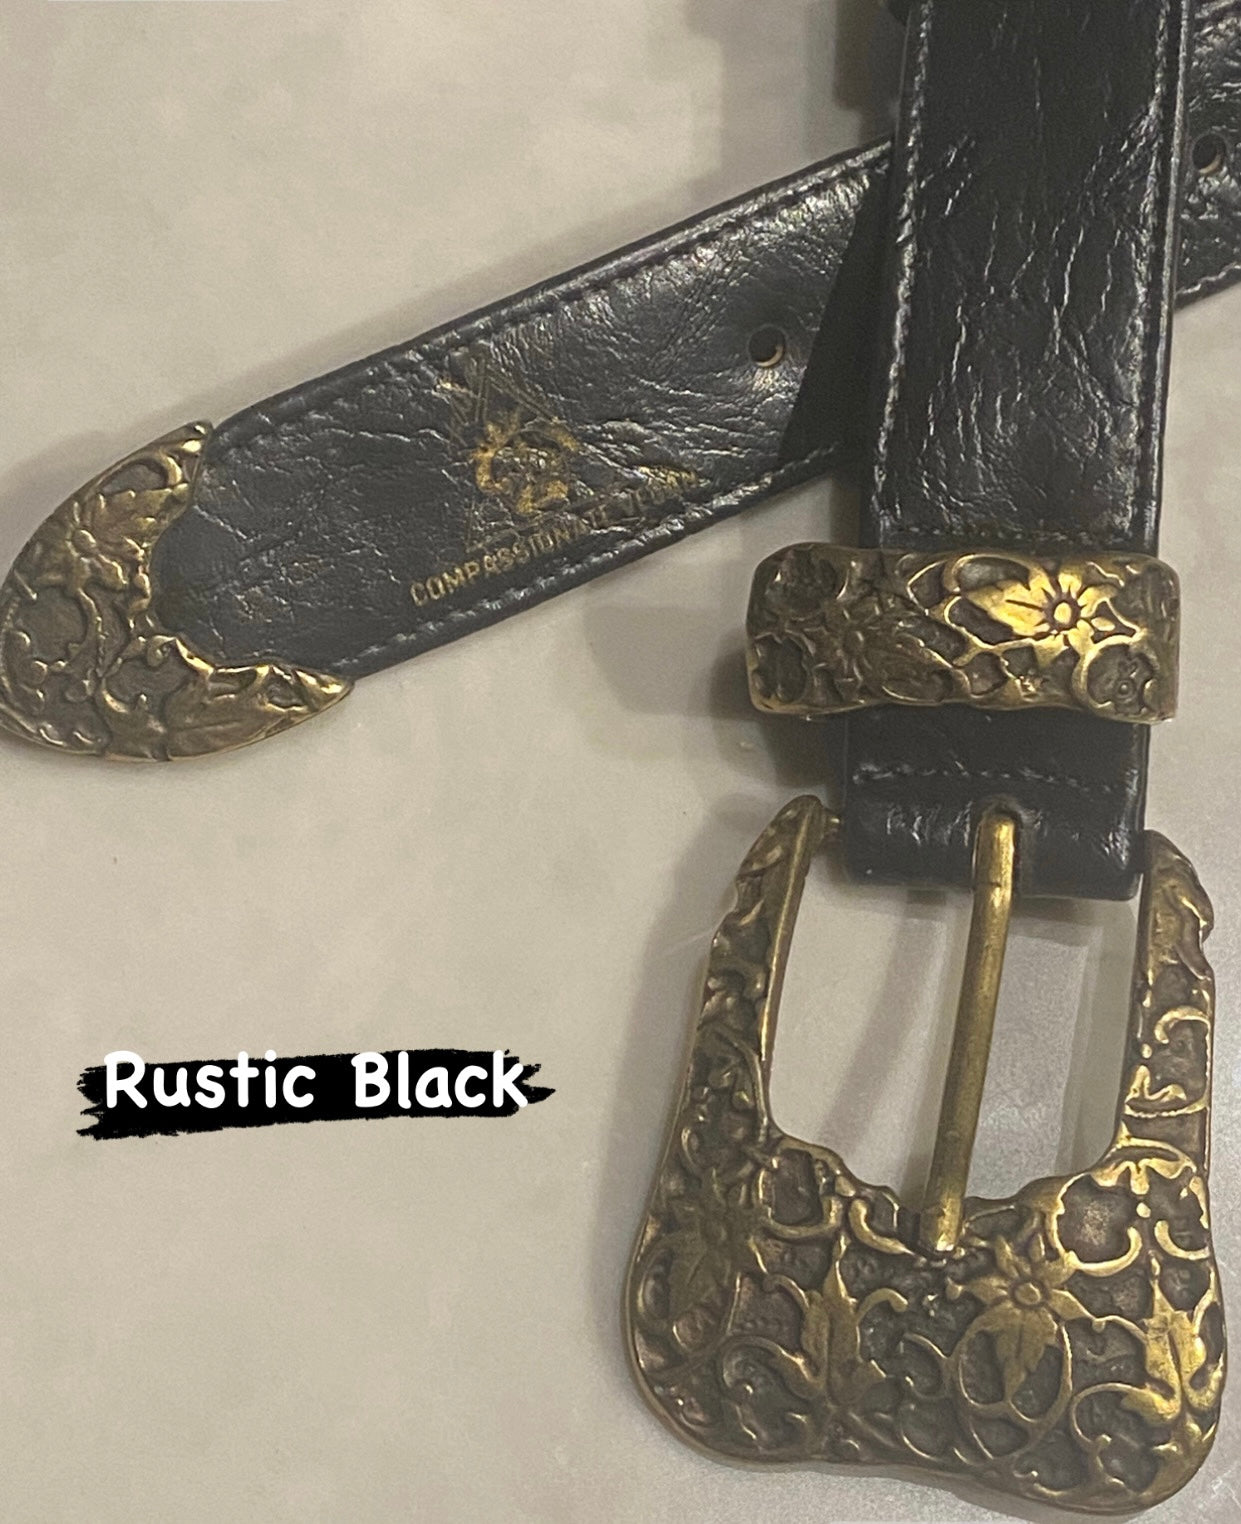 El Clásica Black Rustic Belt